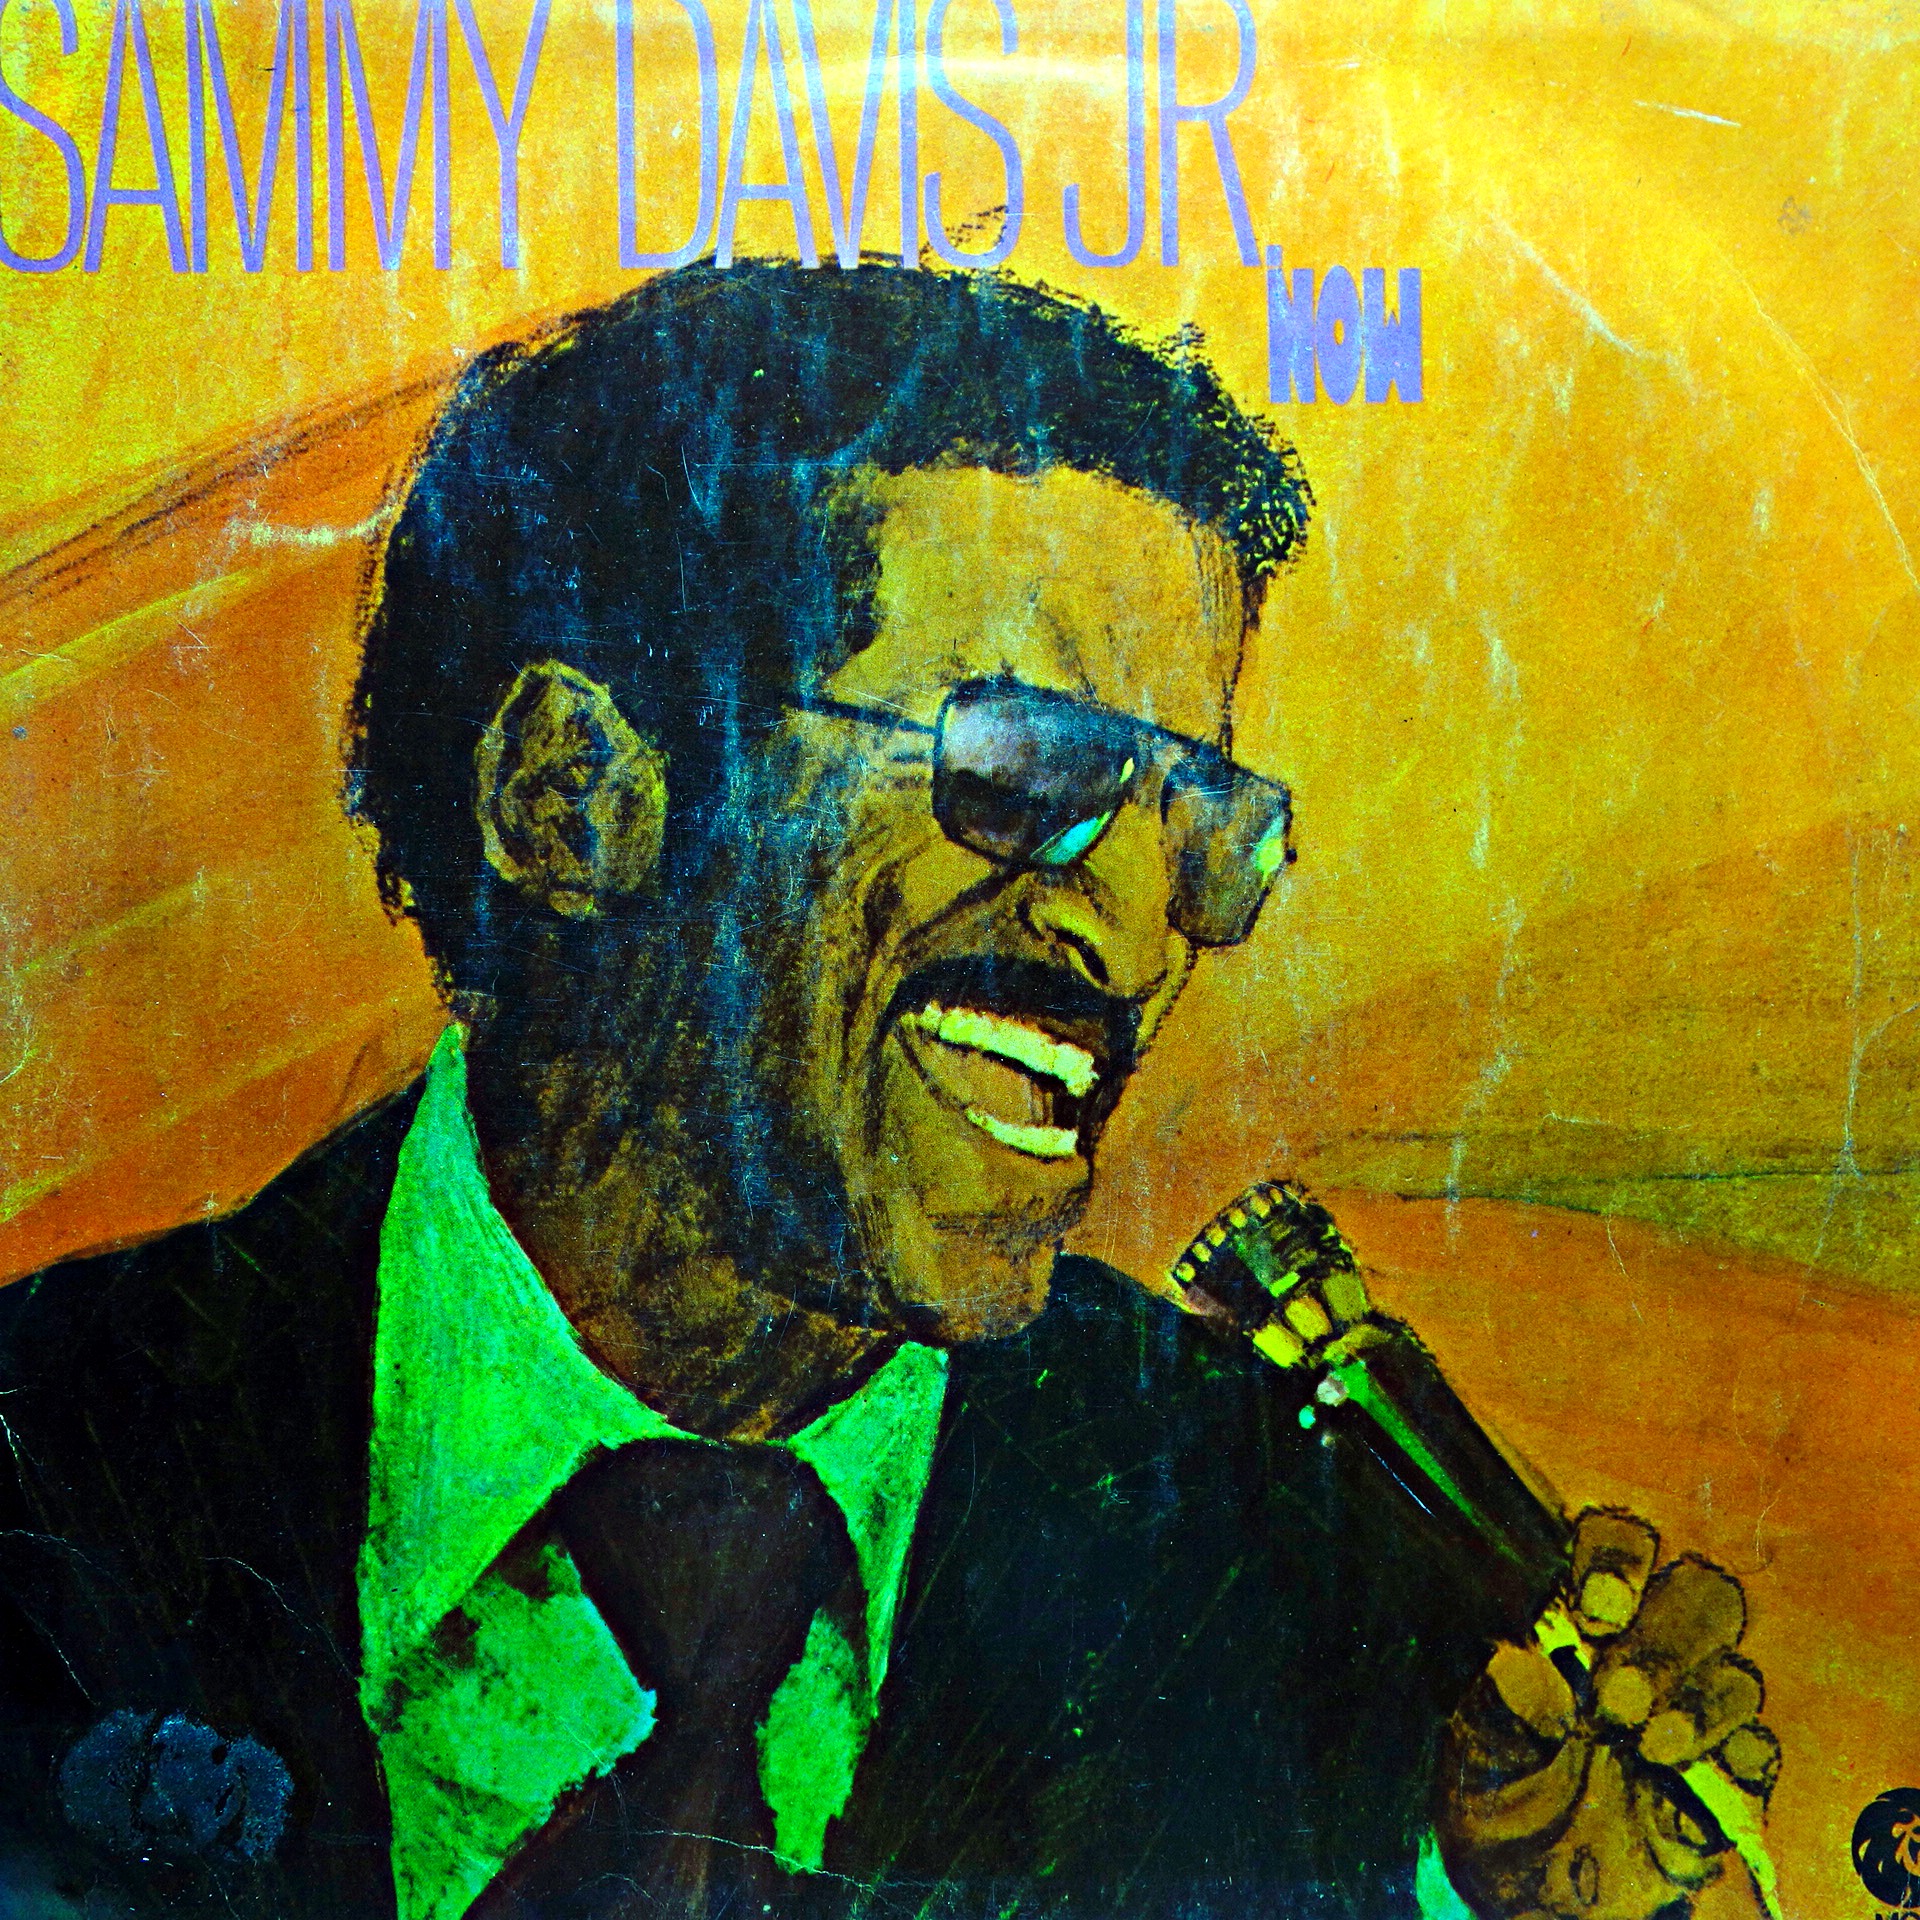 LP Sammy Davis Jr. ‎– Now (čtěte popis)